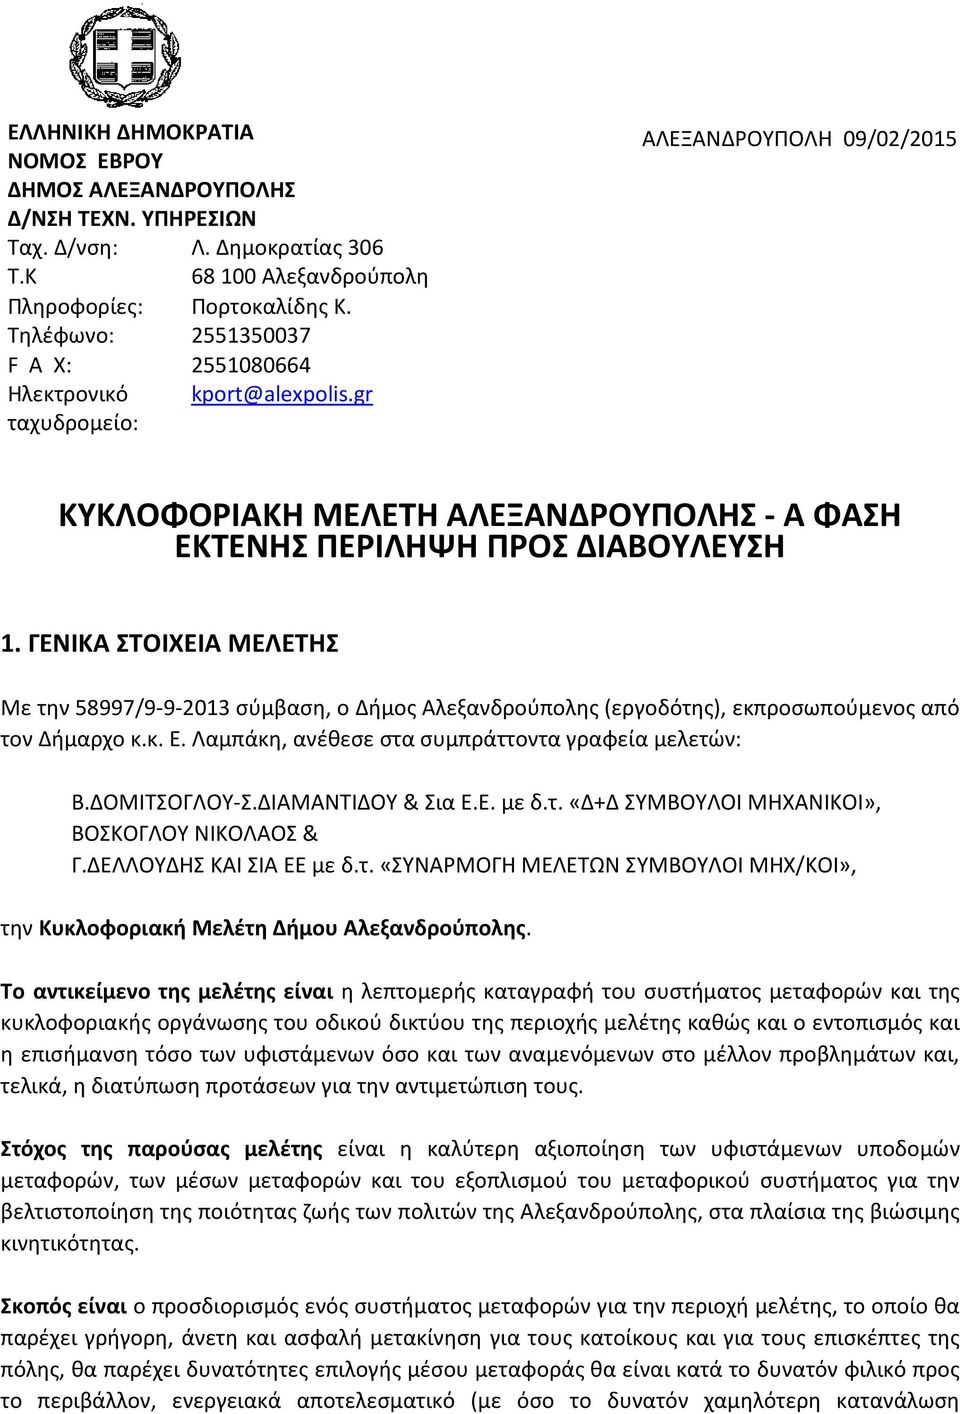 ΓΕΝΙΚΑ ΣΤΟΙΧΕΙΑ ΜΕΛΕΤΗΣ Με την 58997/9-9-2013 σύμβαση, ο Δήμος Αλεξανδρούπολης (εργοδότης), εκπροσωπούμενος από τον Δήμαρχο κ.κ. Ε. Λαμπάκη, ανέθεσε στα συμπράττοντα γραφεία μελετών: Β.ΔΟΜΙΤΣΟΓΛΟΥ-Σ.